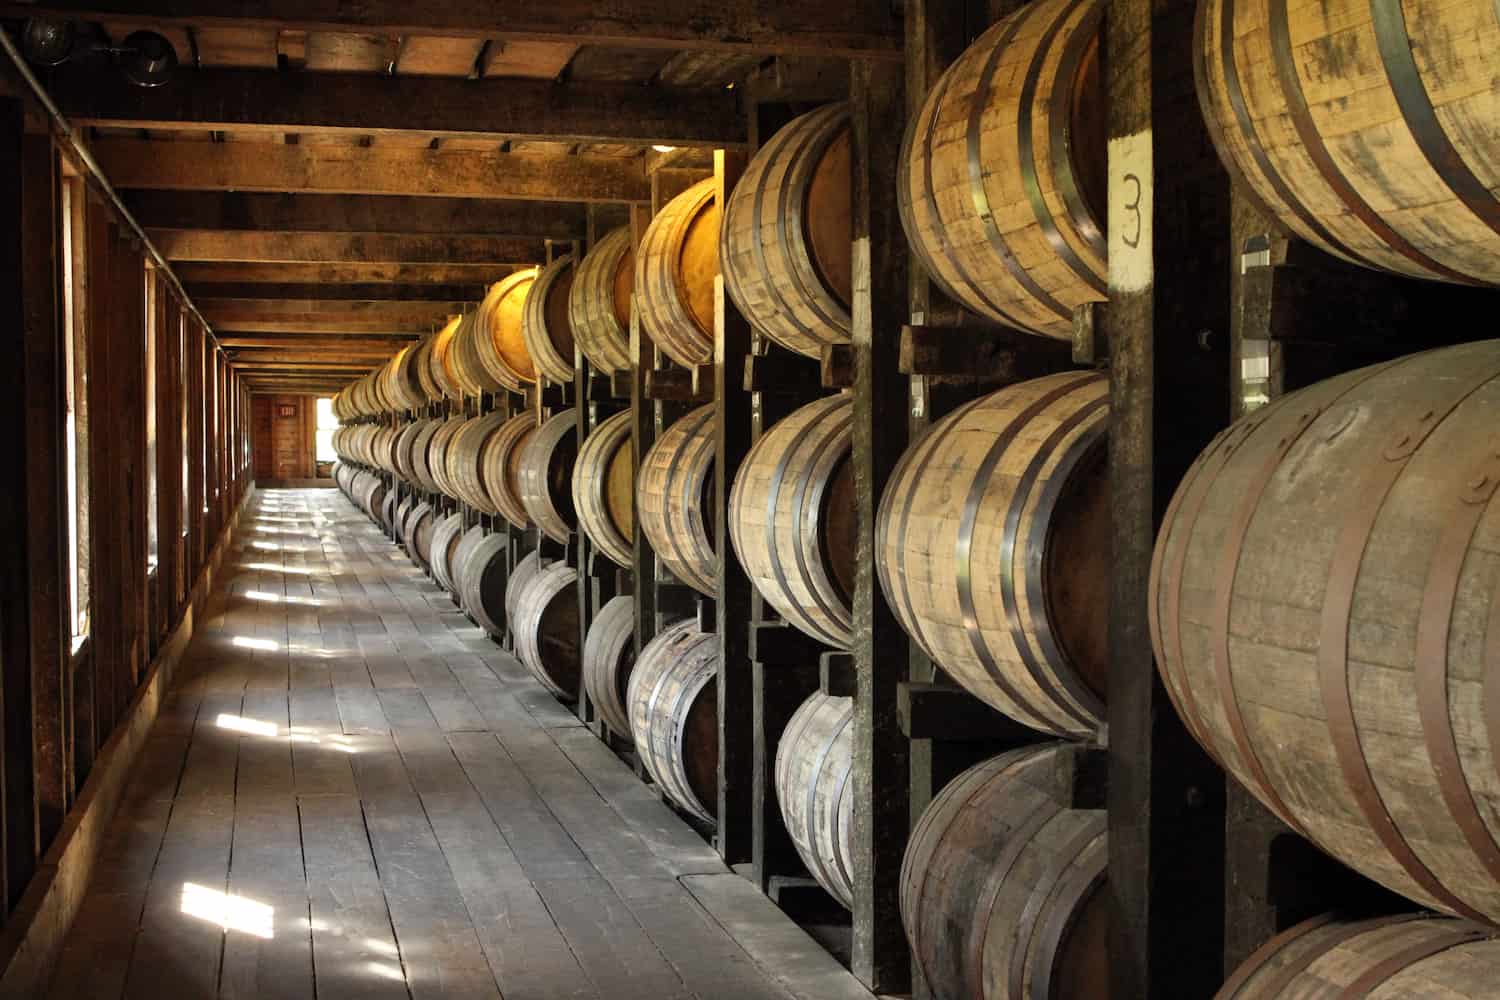 Barrels aging in a rickhouse